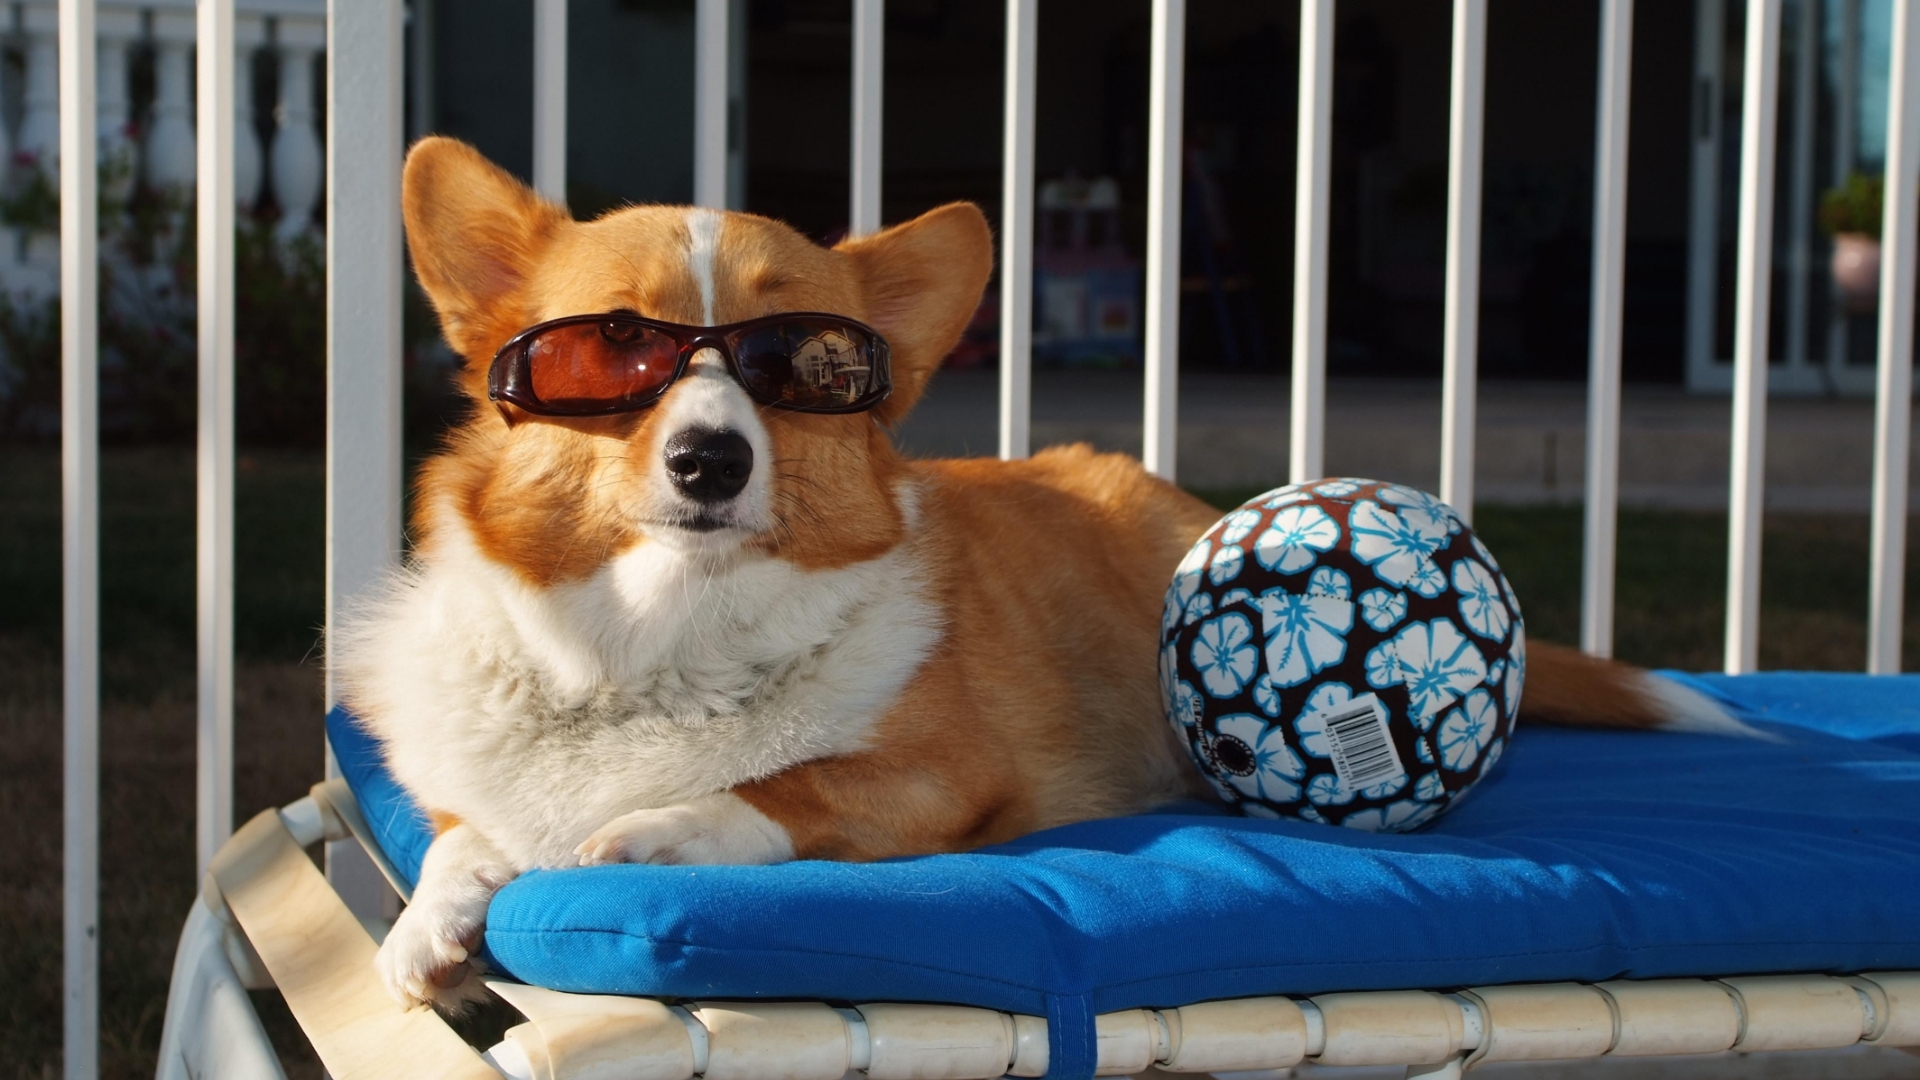 Image: Dog, glasses, ball, lies